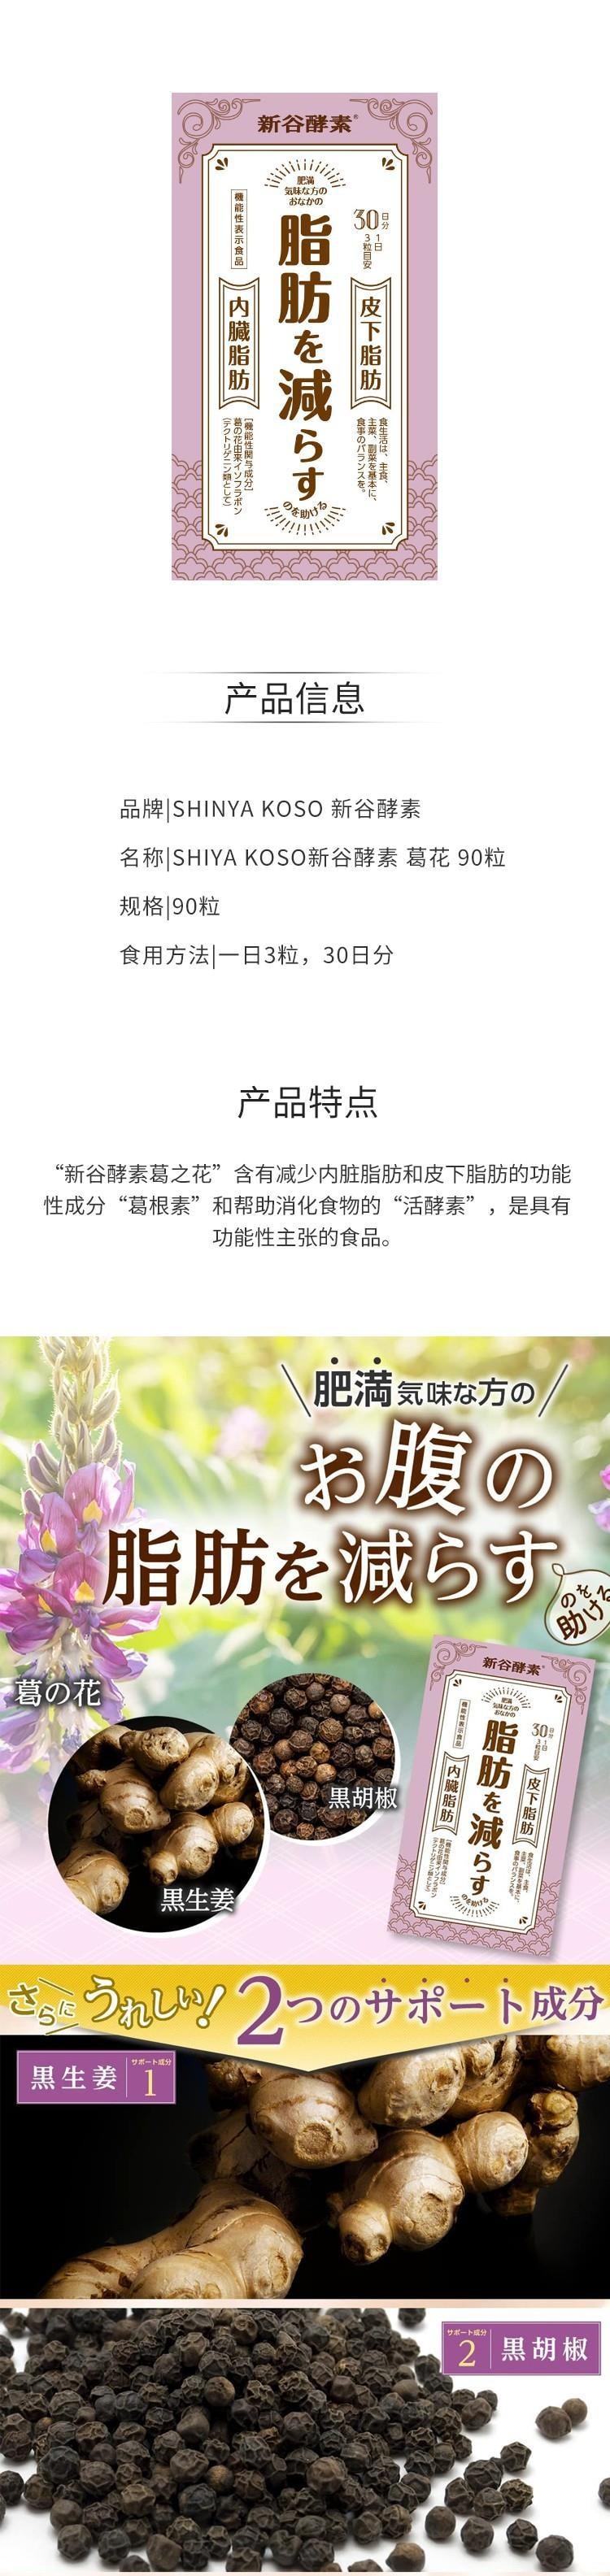 【日本直效郵件】SHIYA KOSO新谷酵素 葛花植物酵素 減皮下脂肪降低內臟脂肪 90粒